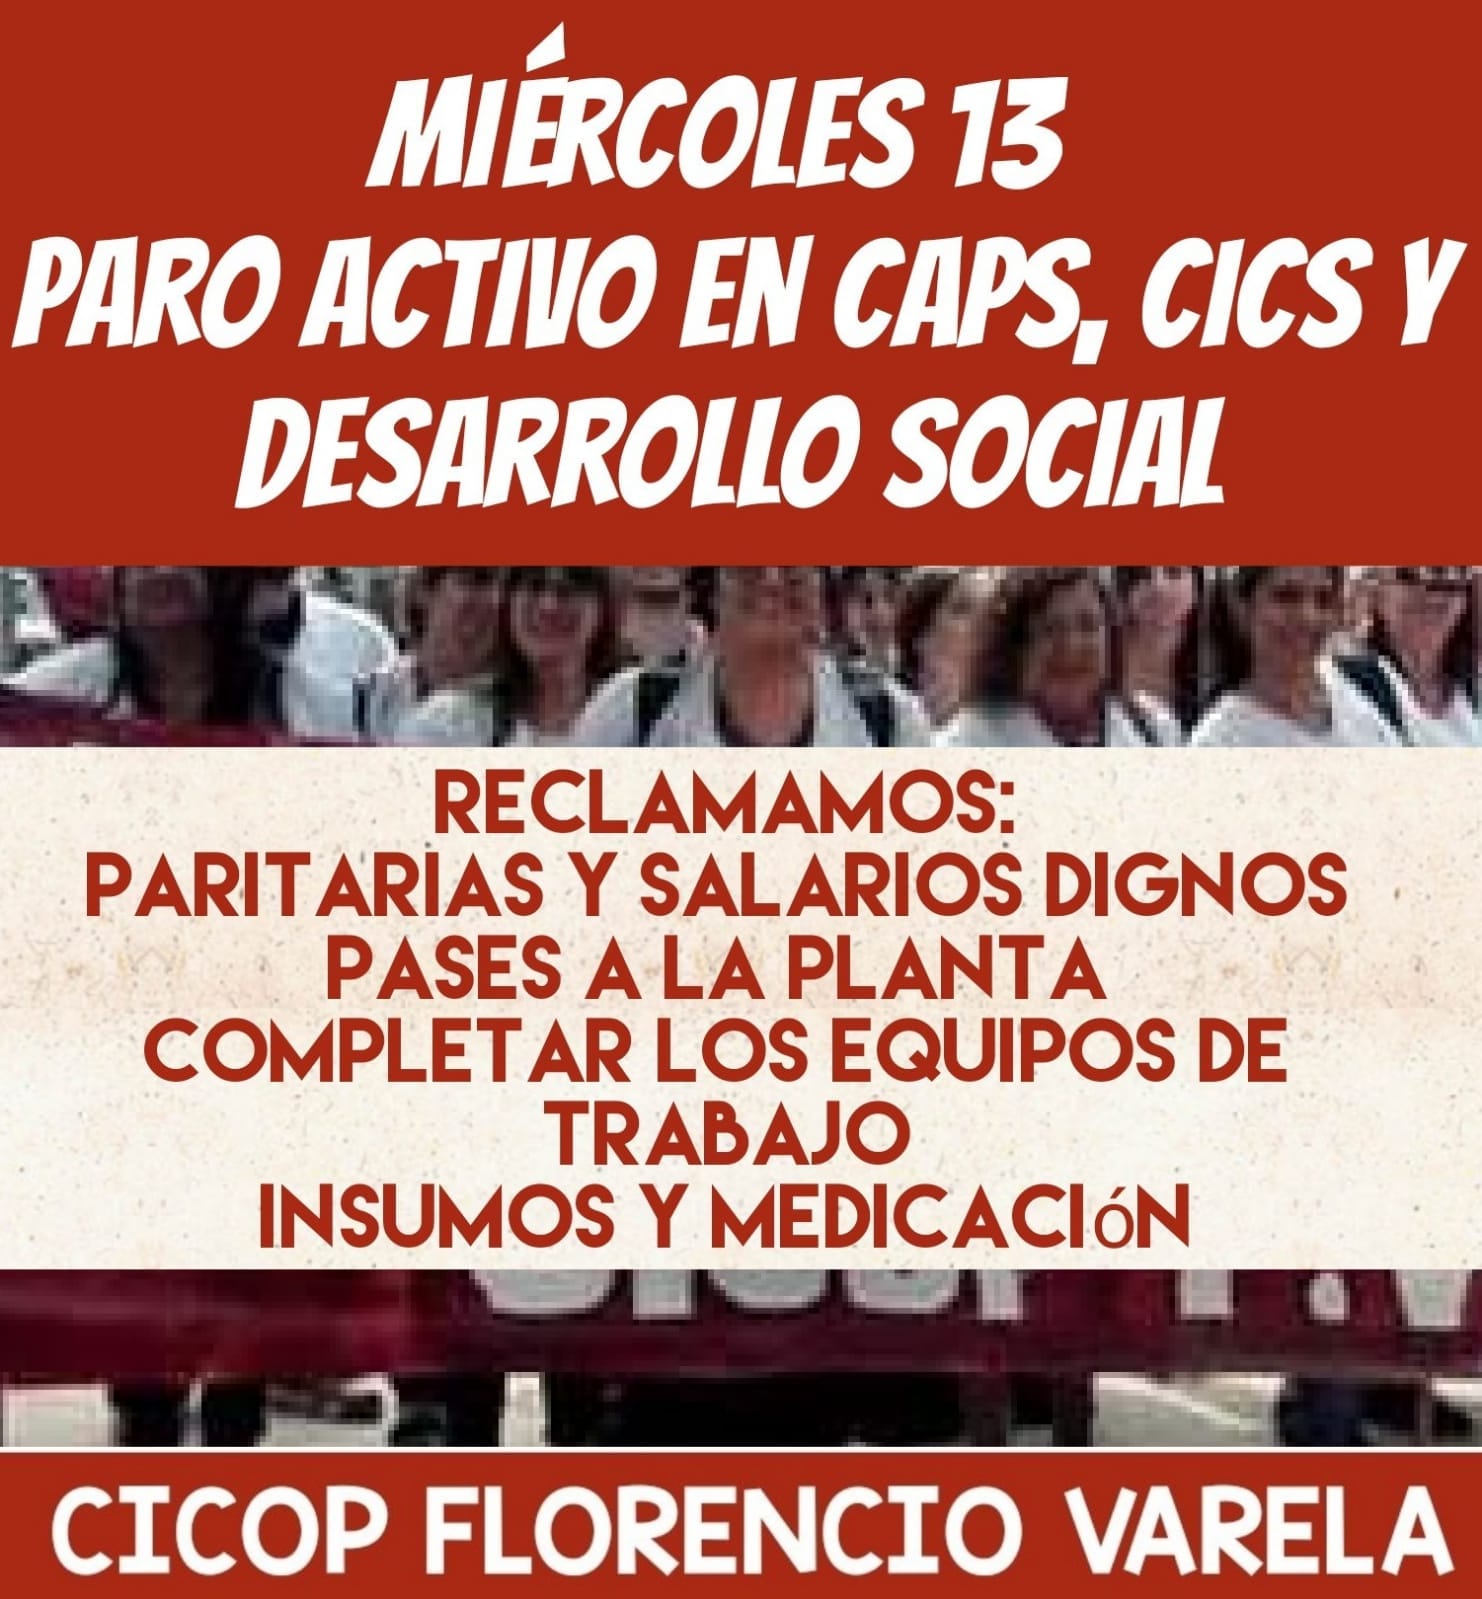 FLORENCIO VARELA: PARO ACTIVO DE 24 HORAS EN CAPS, CICS Y DESARROLLO SOCIAL